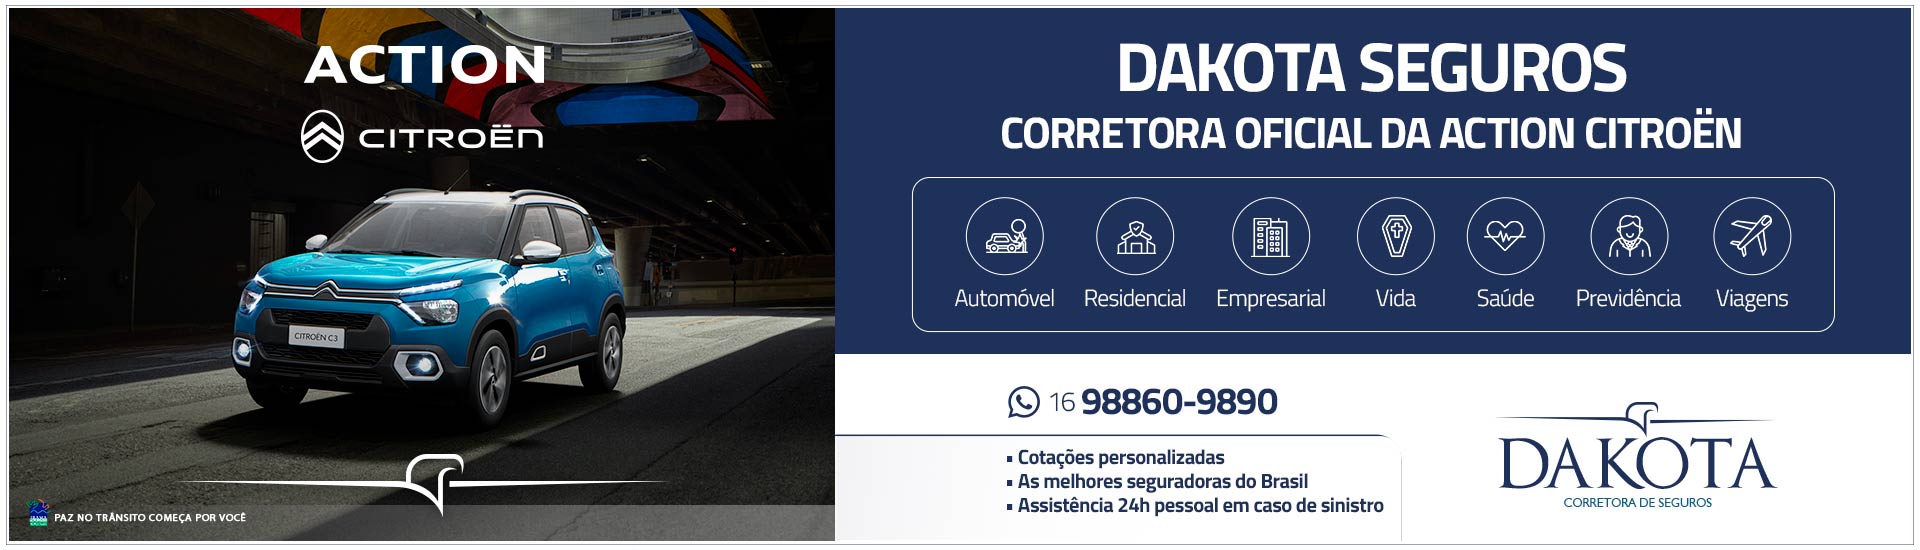 Dakota Segudores - A seguradora oficial da Action Citroen 